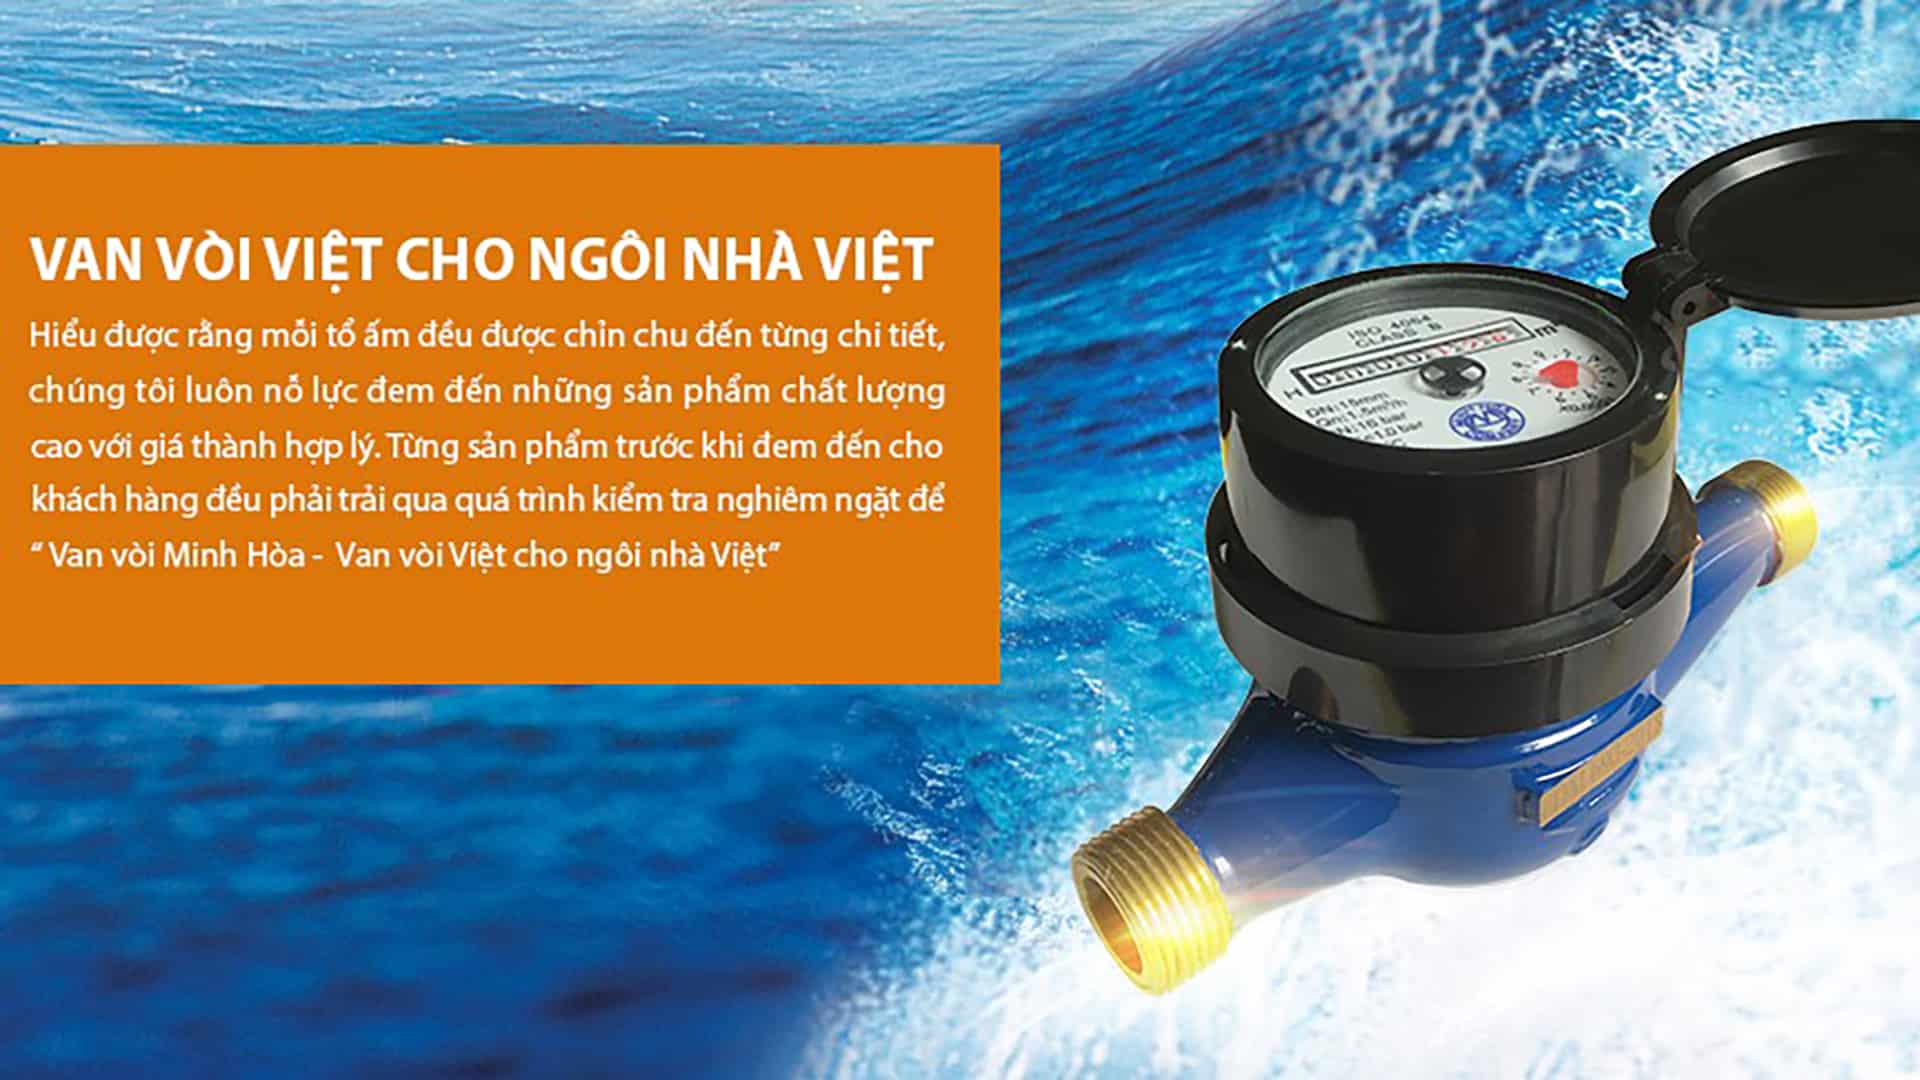 Đồng hồ nước Minh Hòa đạt tiêu chuẩn chất lượng quốc tế